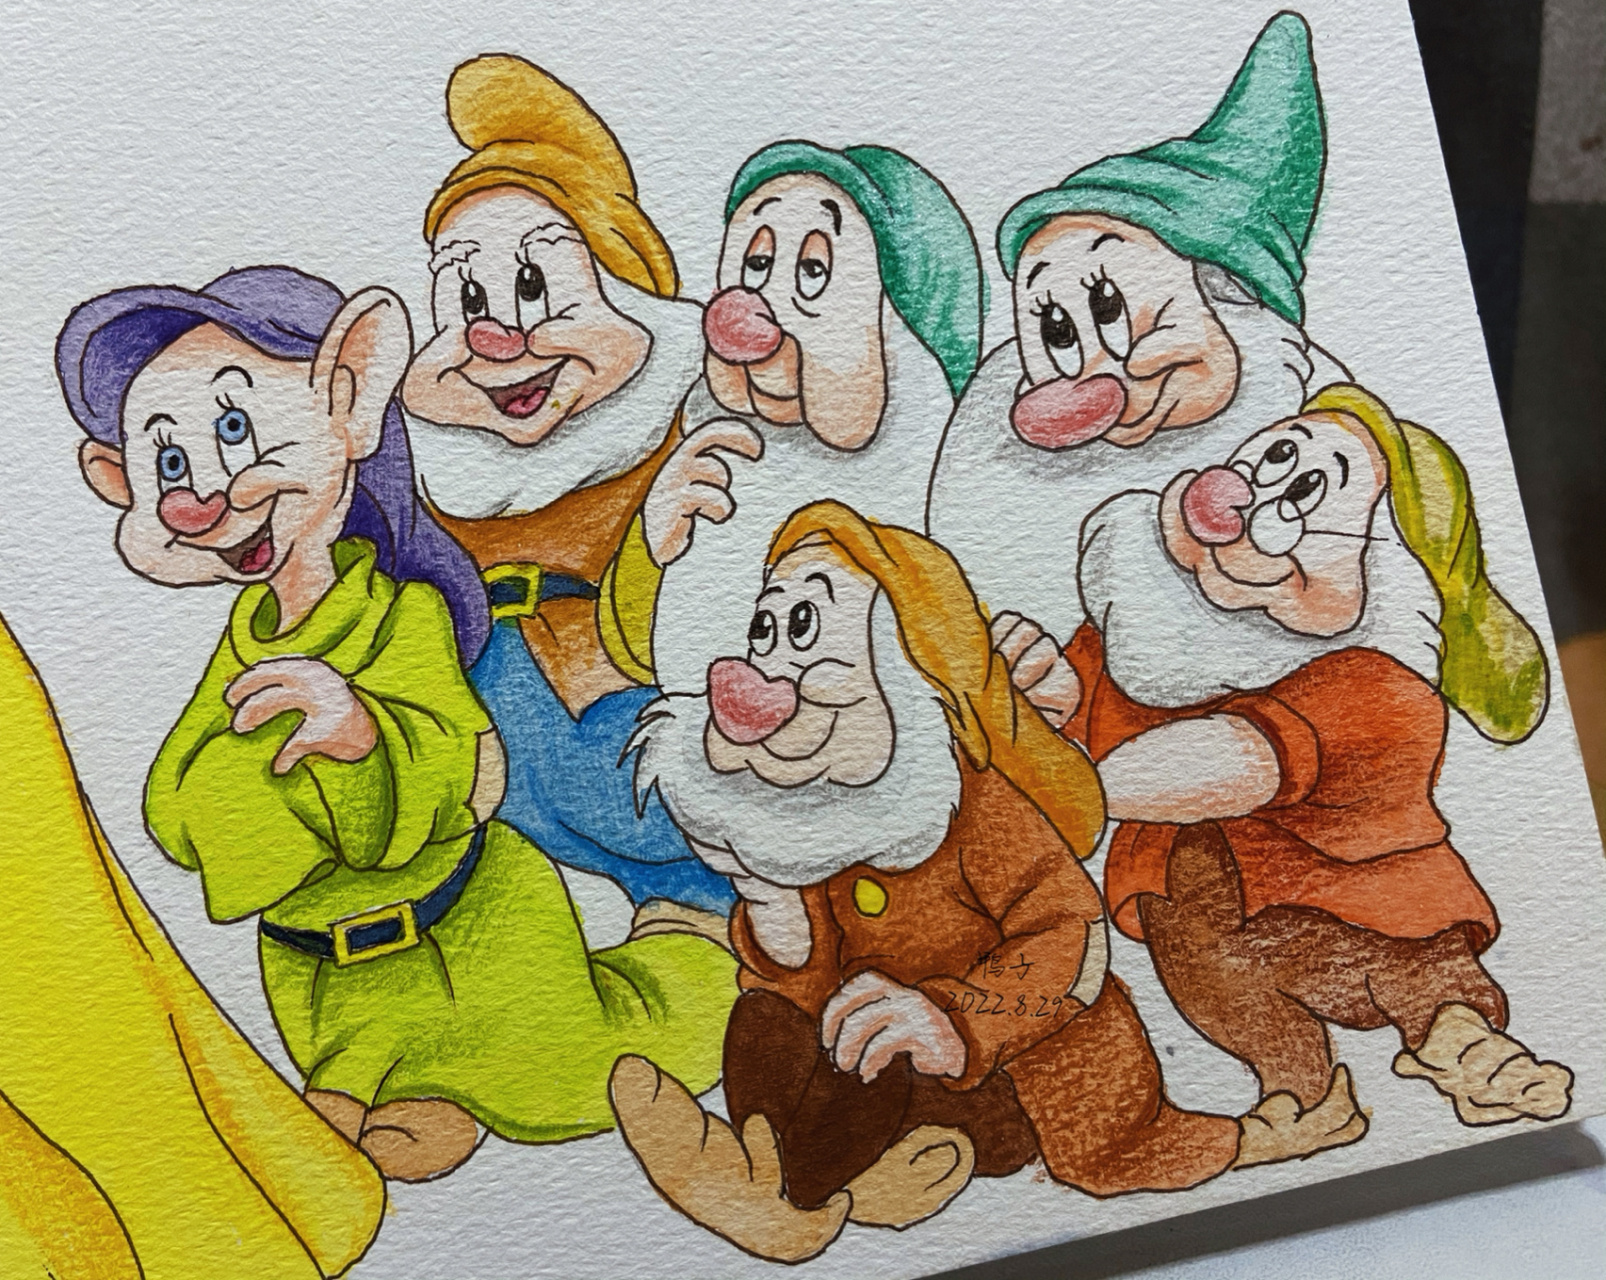 白雪公主与七个小矮人(上色图) 工具分享: 勾线笔:樱花01棕色 水彩